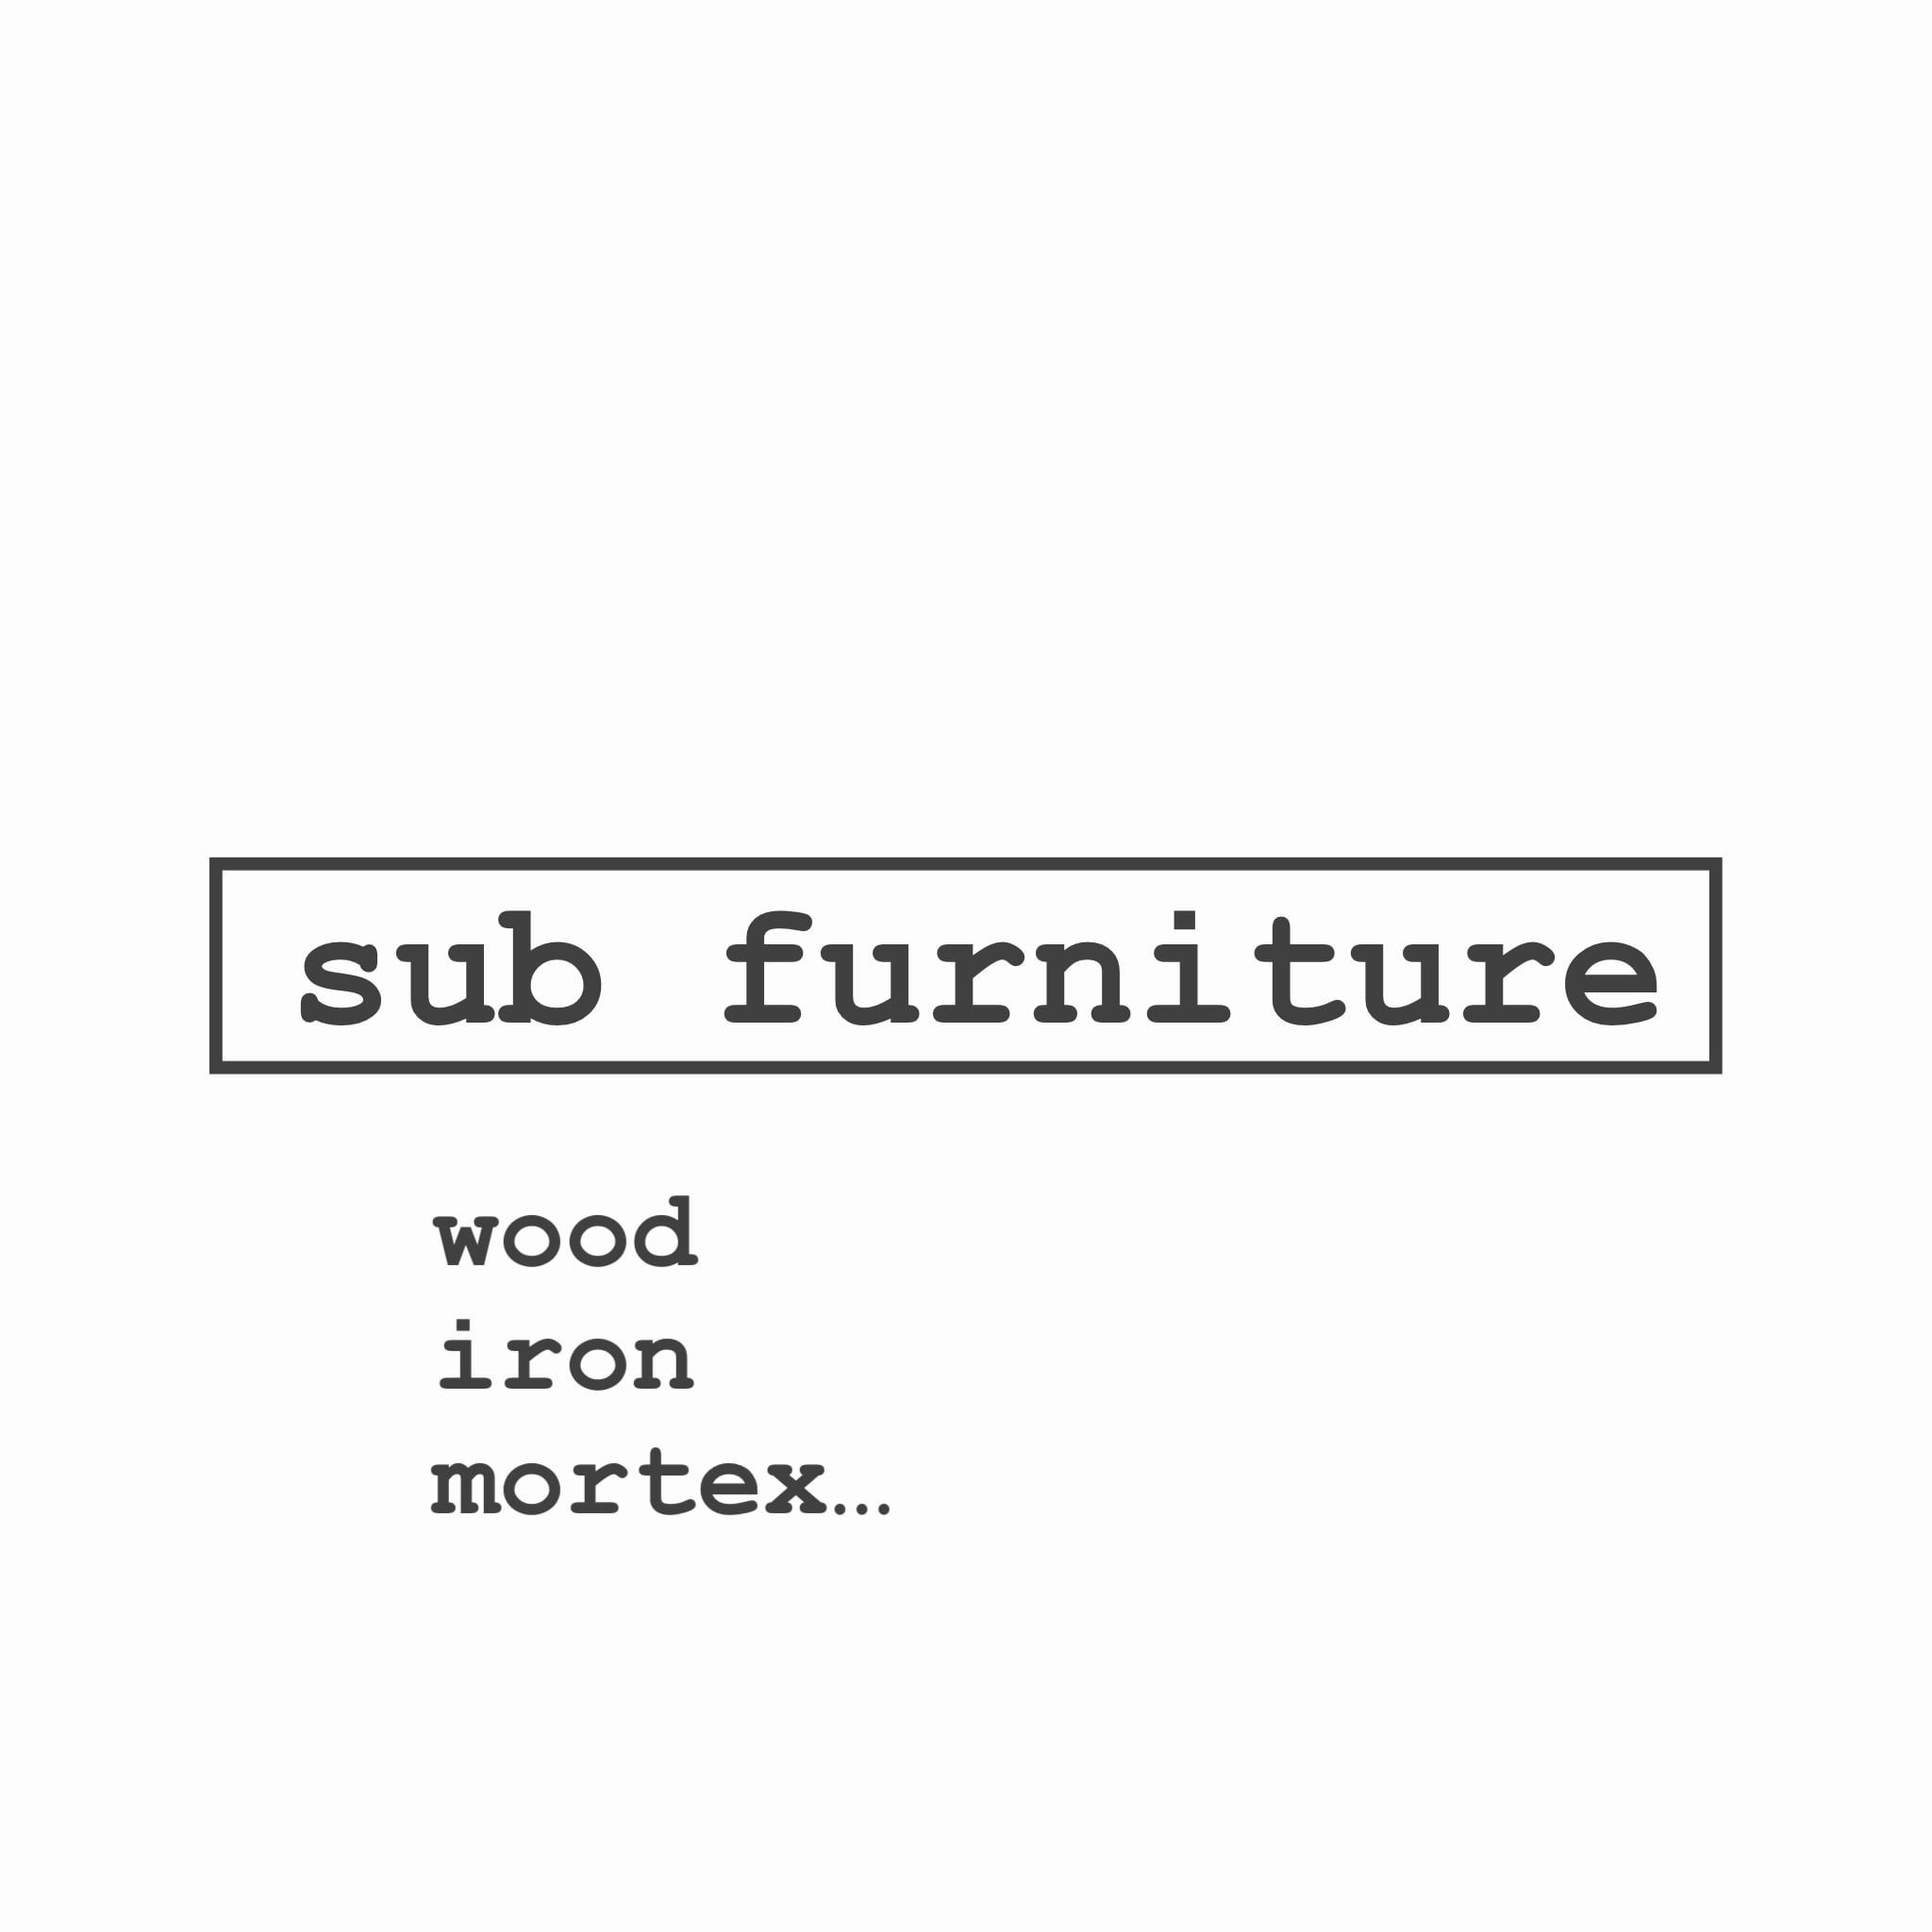 sub furniture